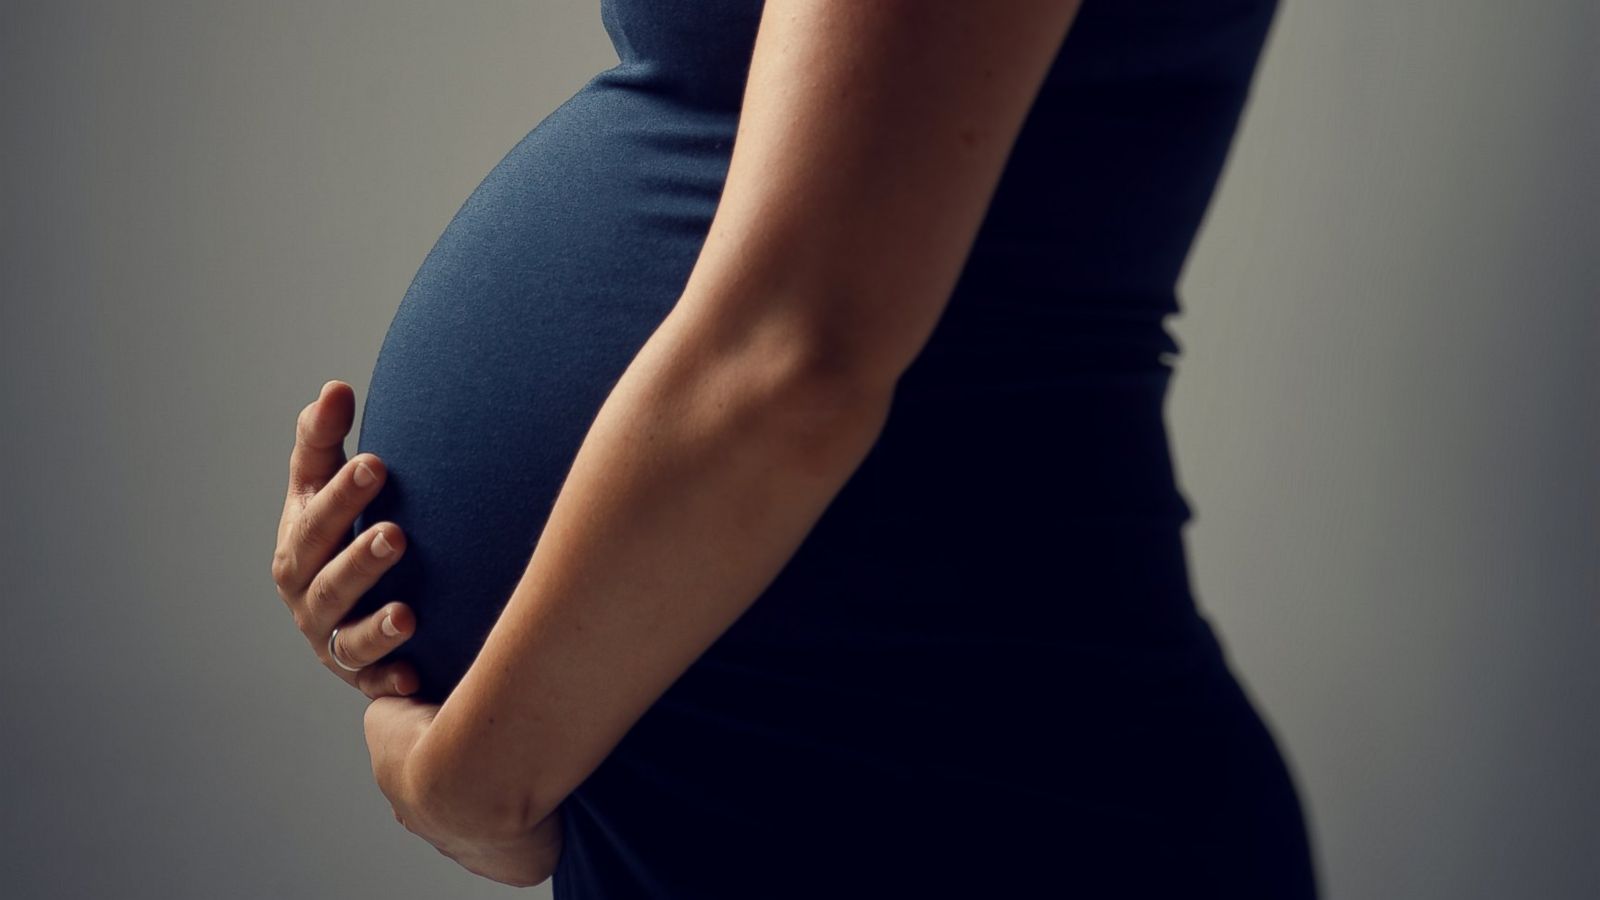 مراحل نمو الجنين في الرحم أثناء الحمل بالصور ثقف نفسك